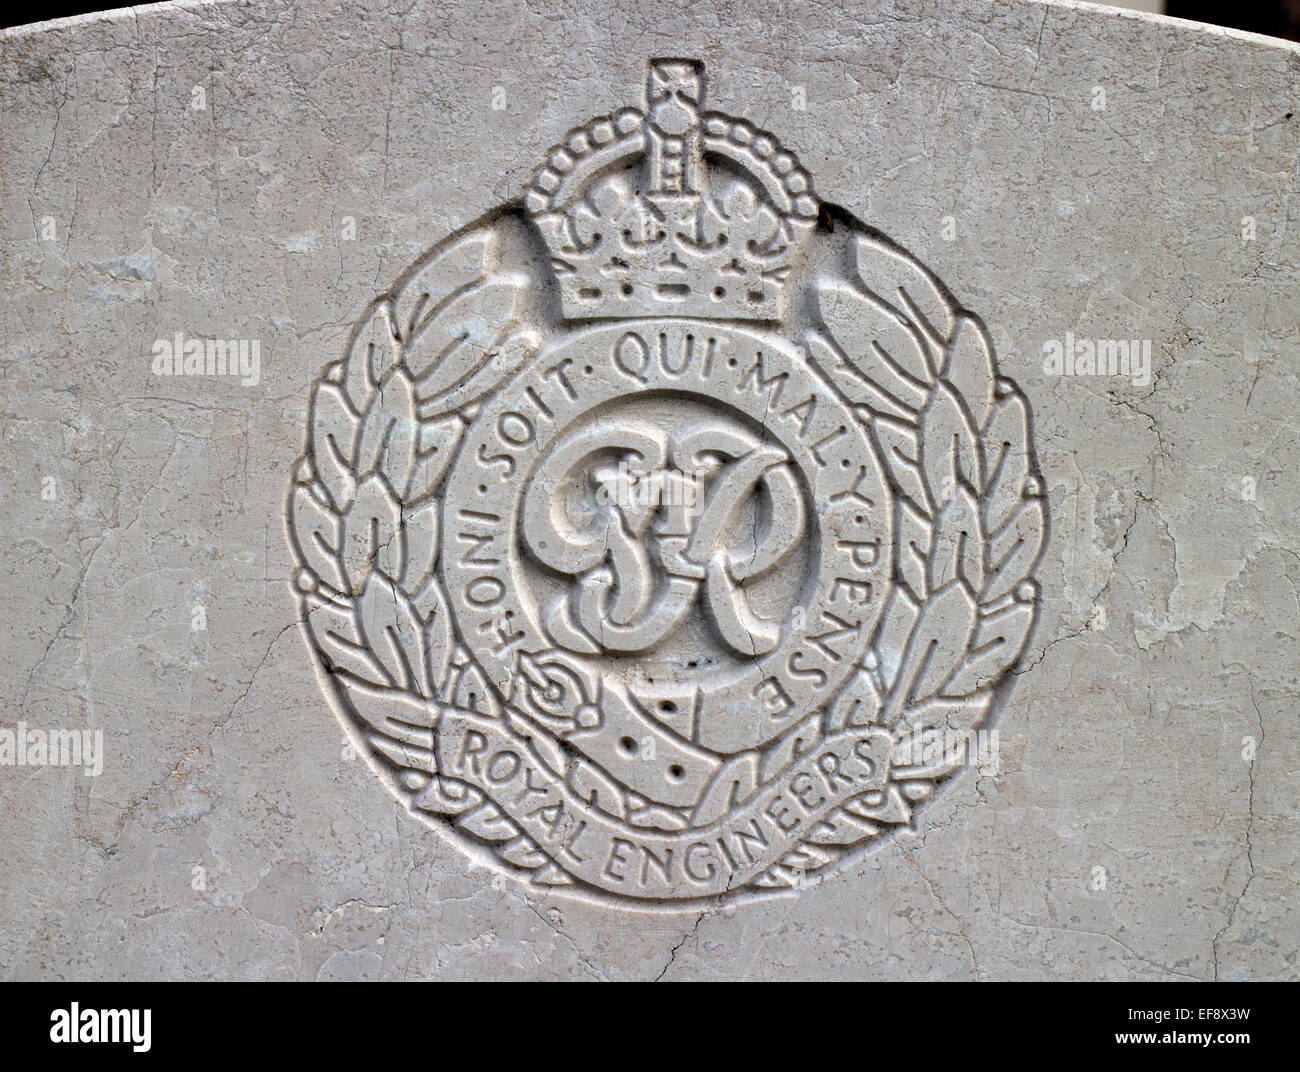 Les Royal Engineers emblème sur une grave guerre Banque D'Images